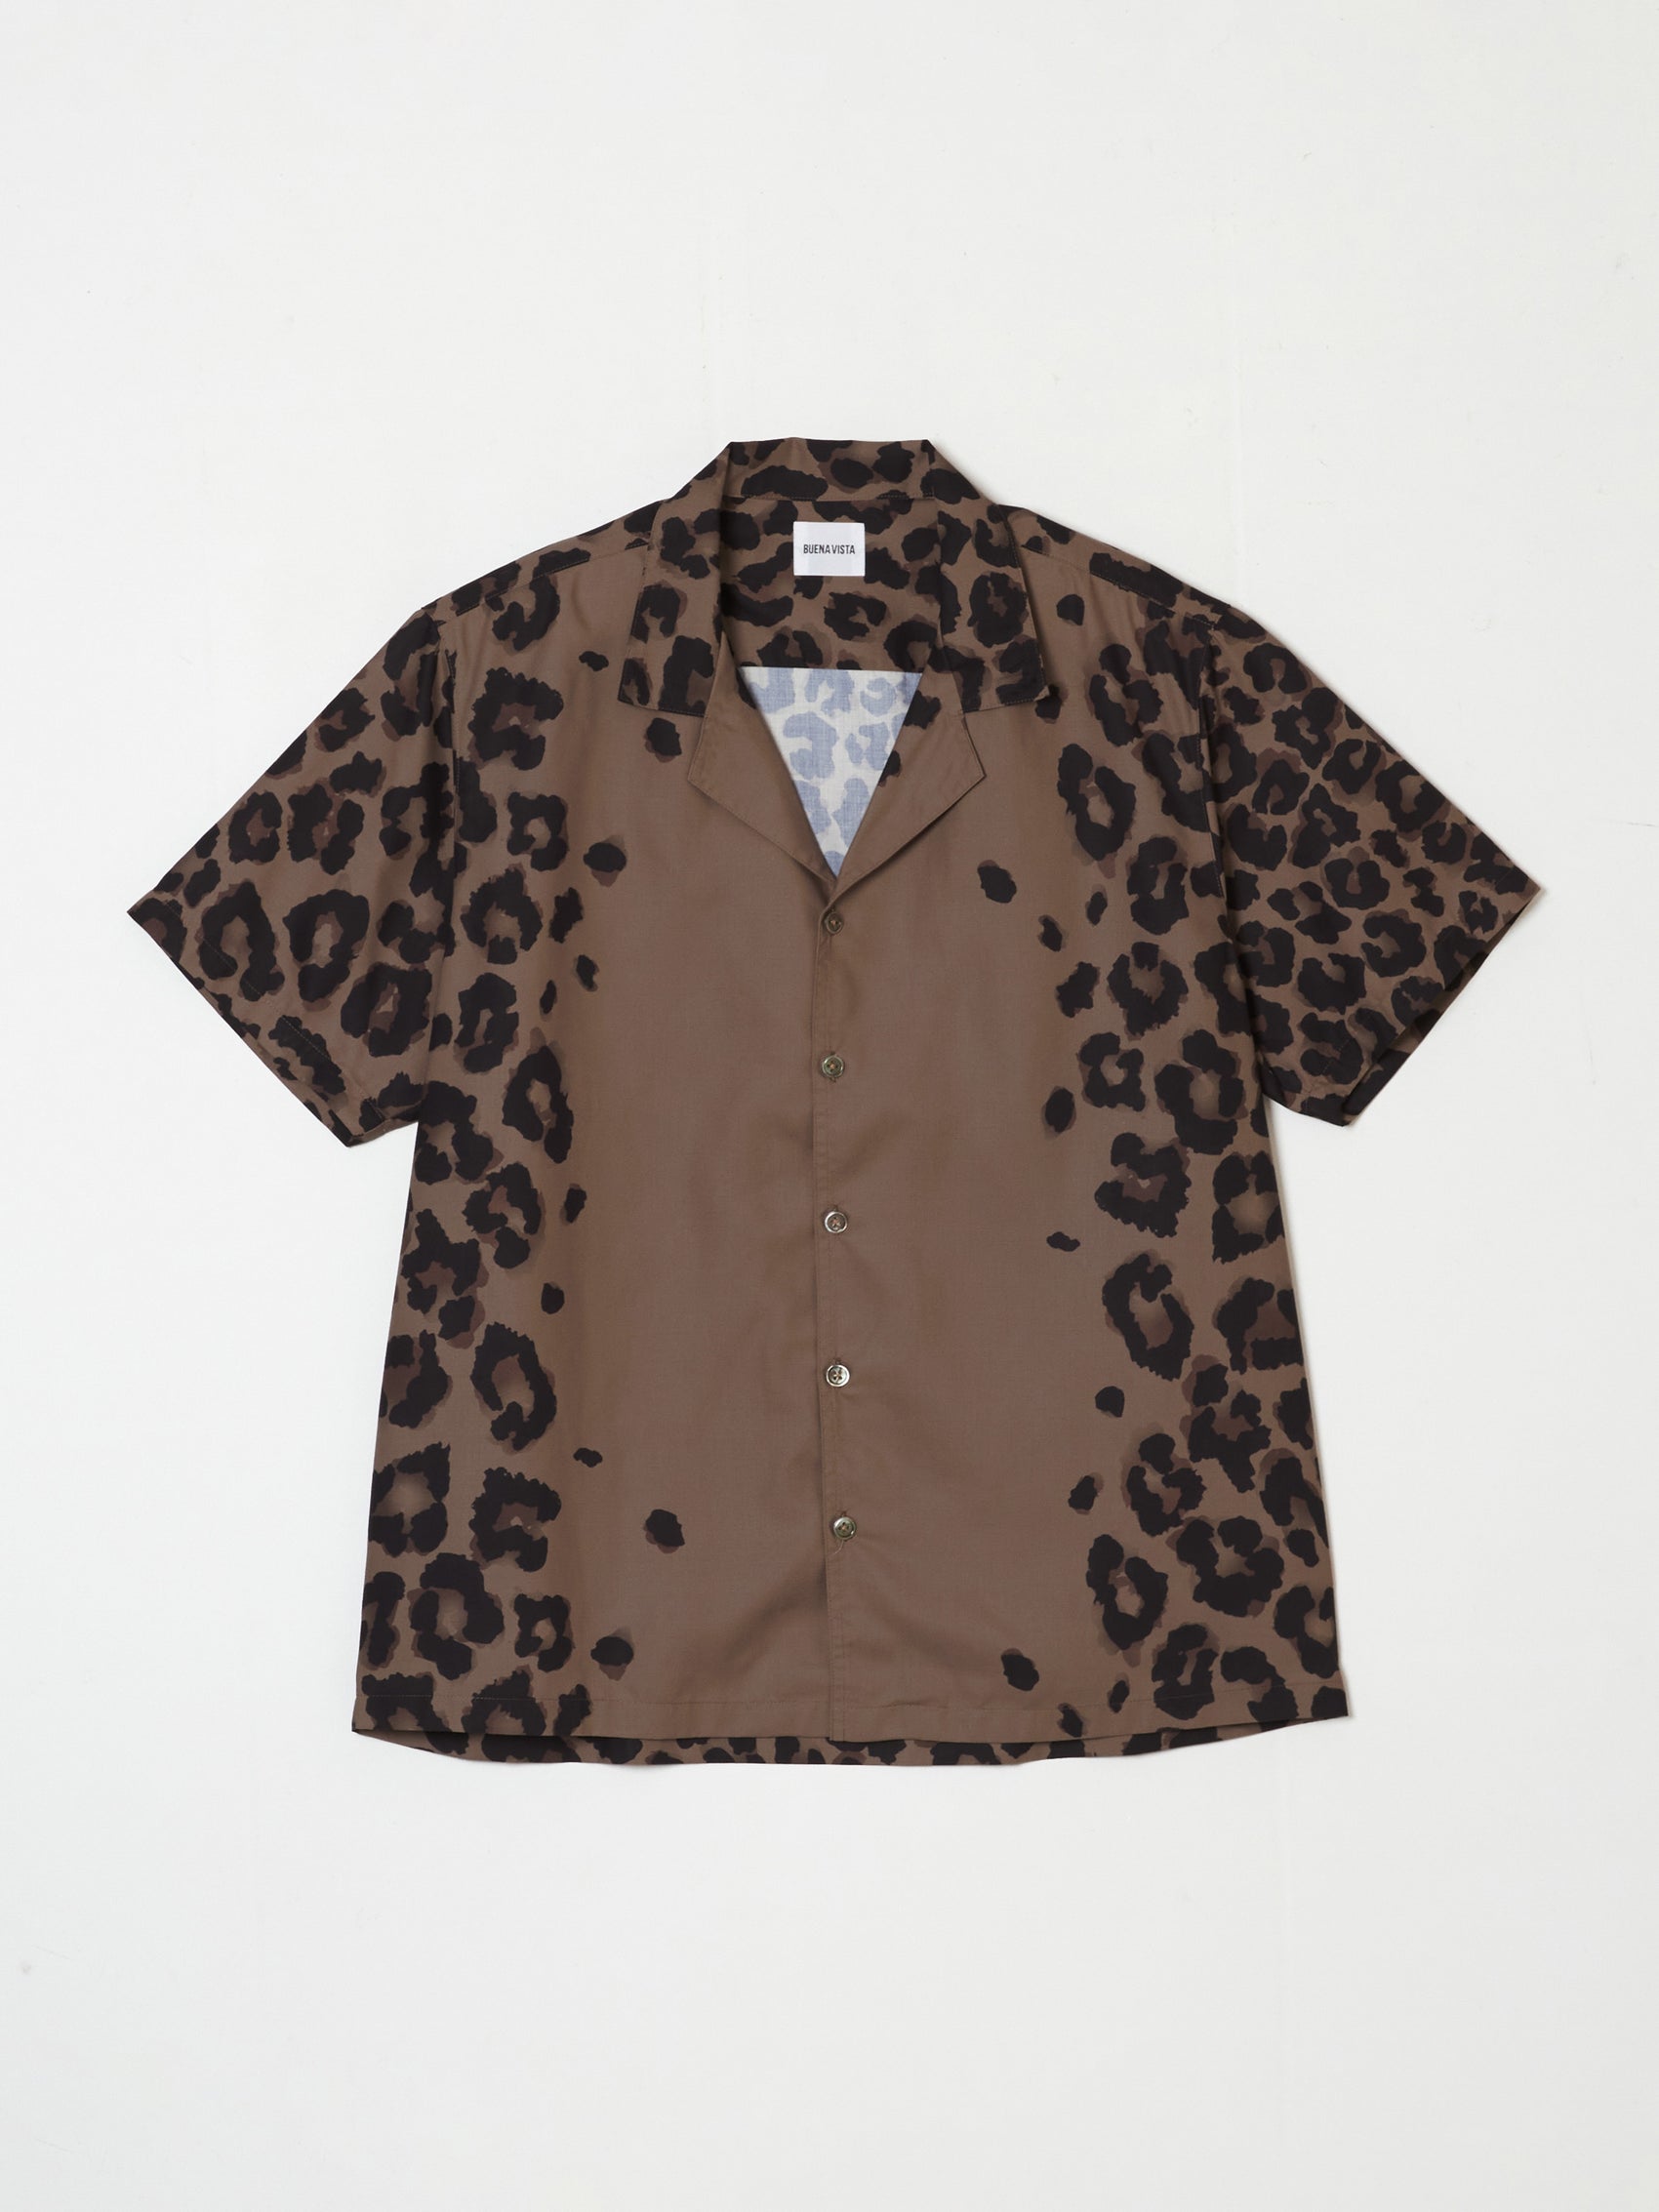 Leopard bowling shirt